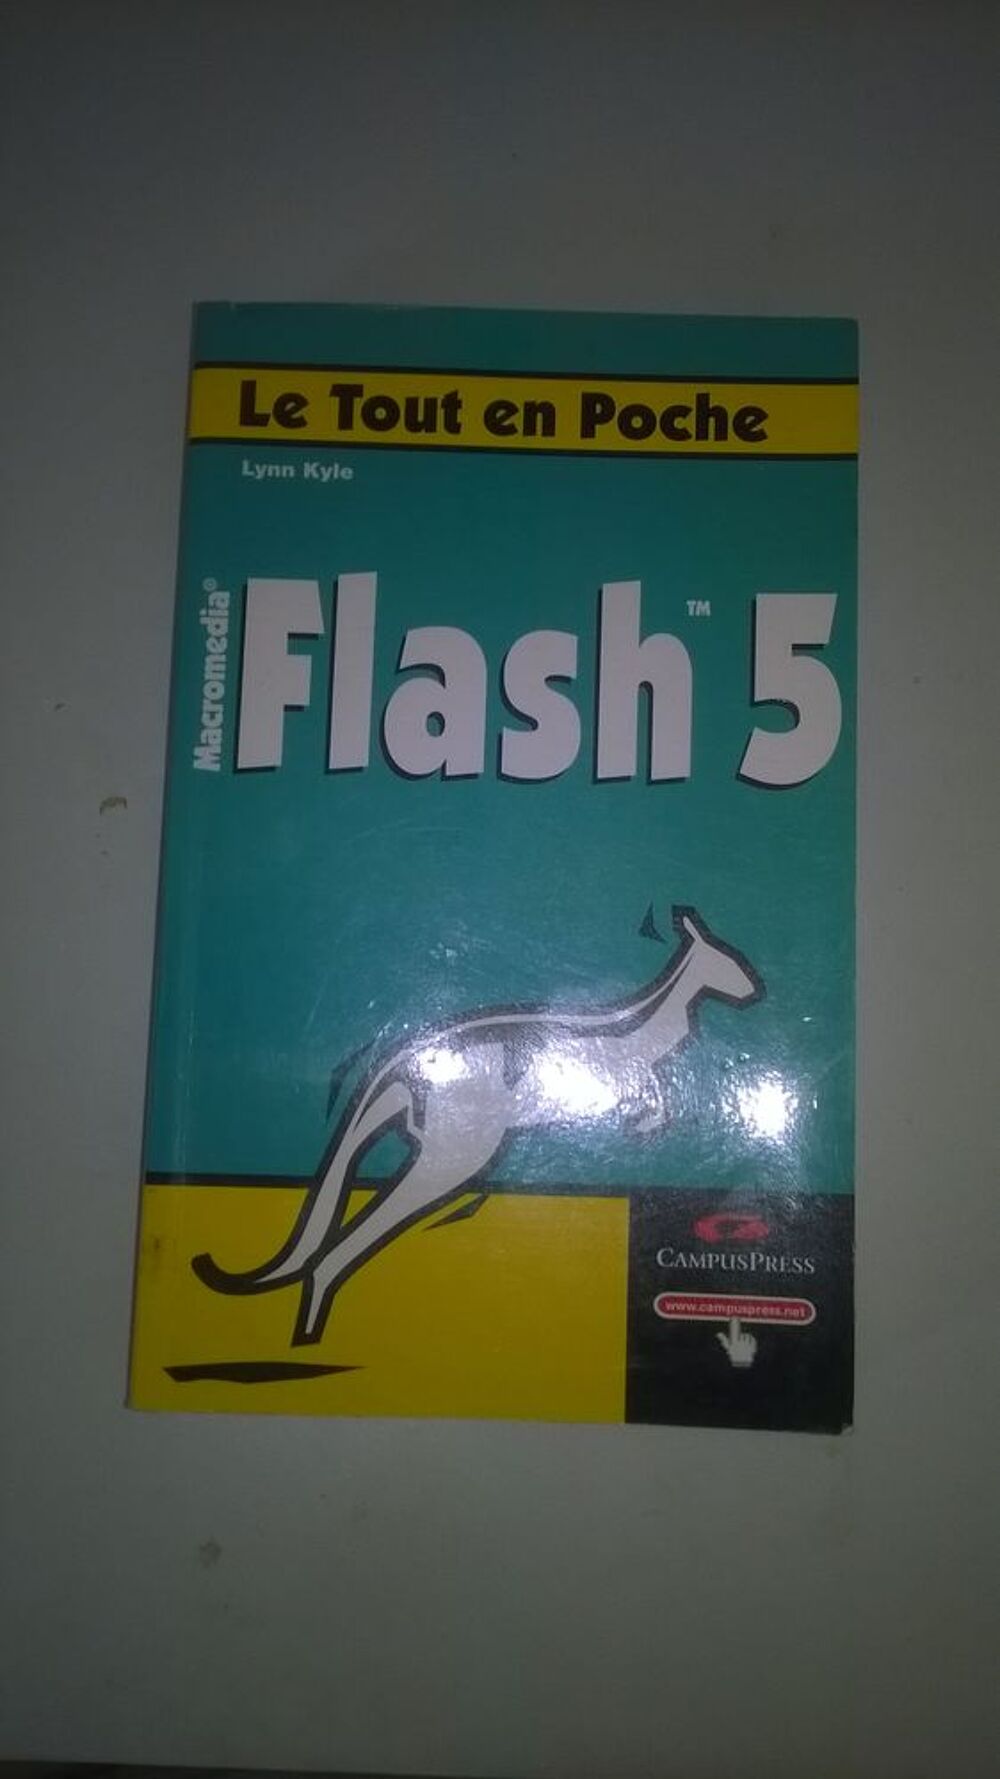 Livre Flash 5
NEUF
Editeur : Campuspress
Livres et BD